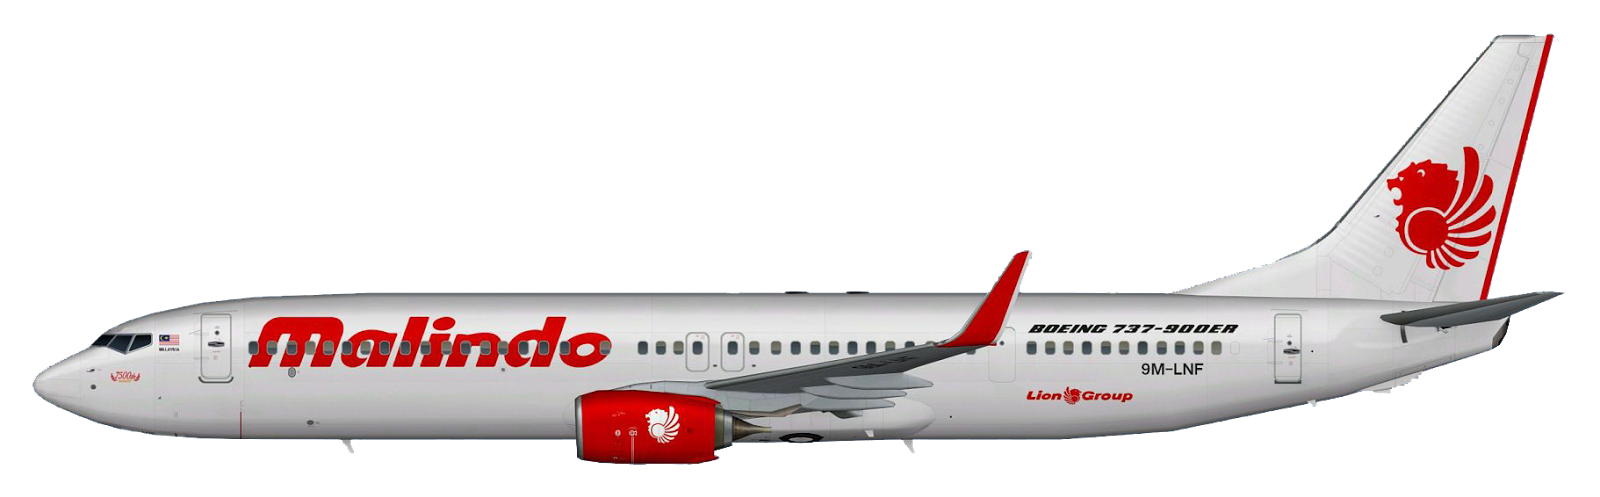 Malindo Air logo, logotype, e